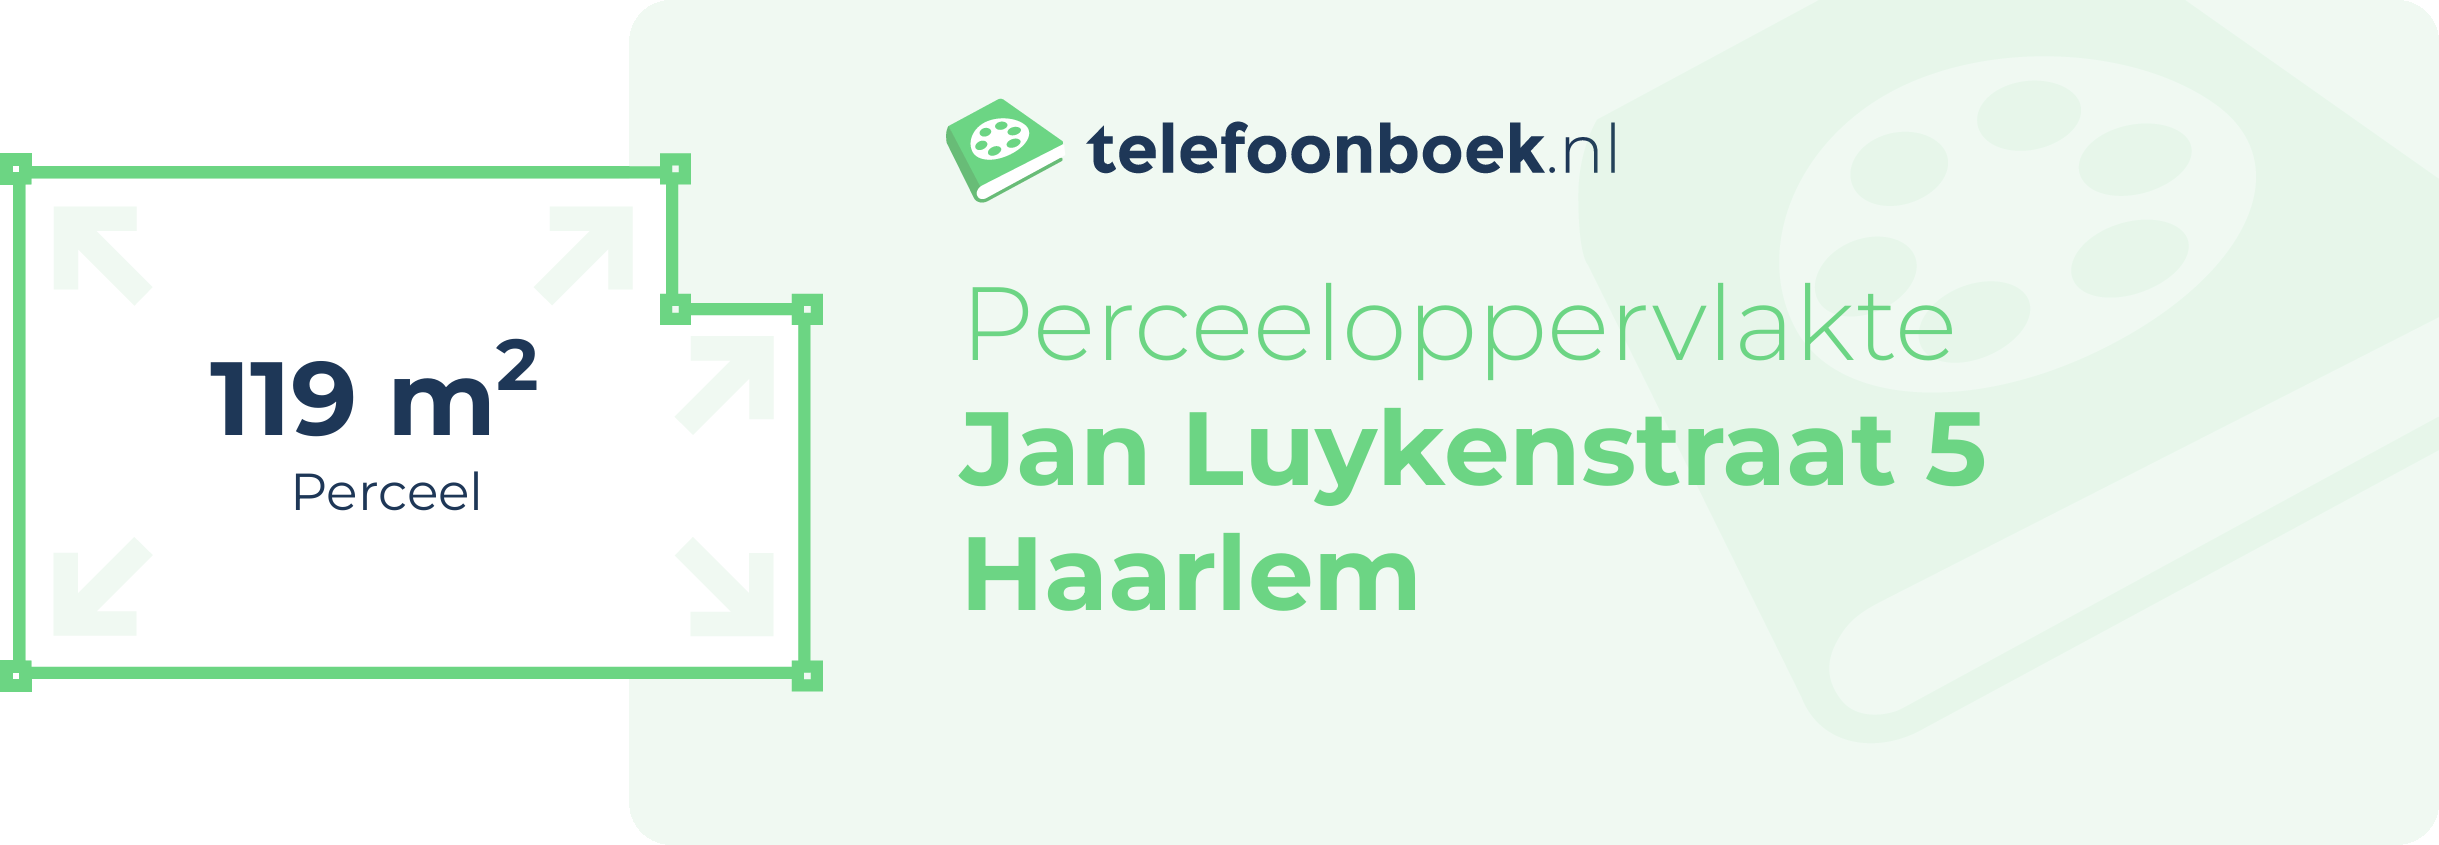 Perceeloppervlakte Jan Luykenstraat 5 Haarlem